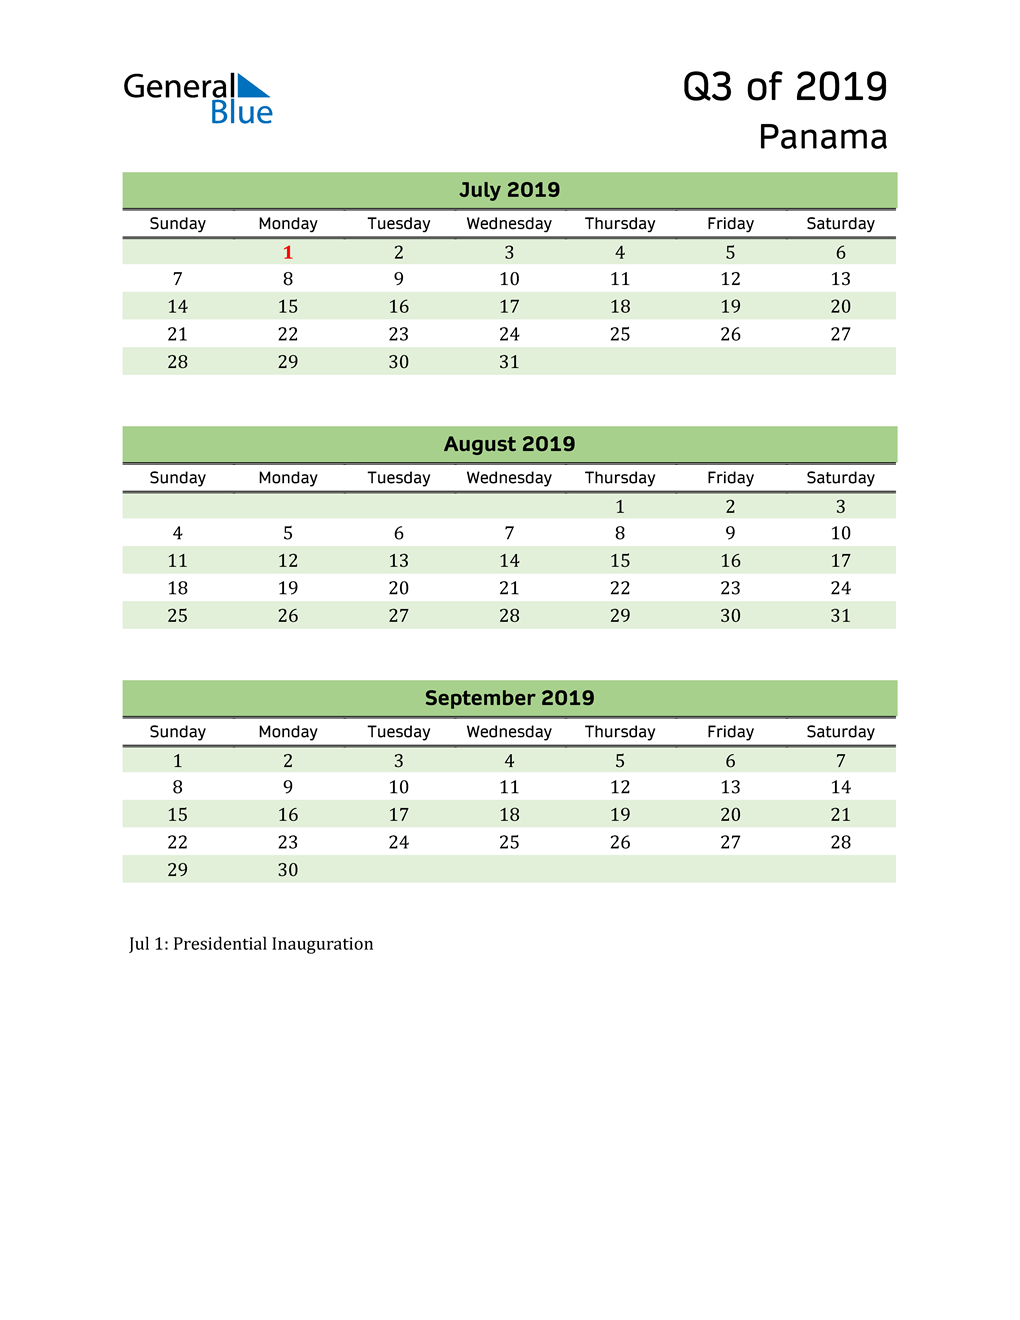  Quarterly Calendar 2019 with Panama Holidays 